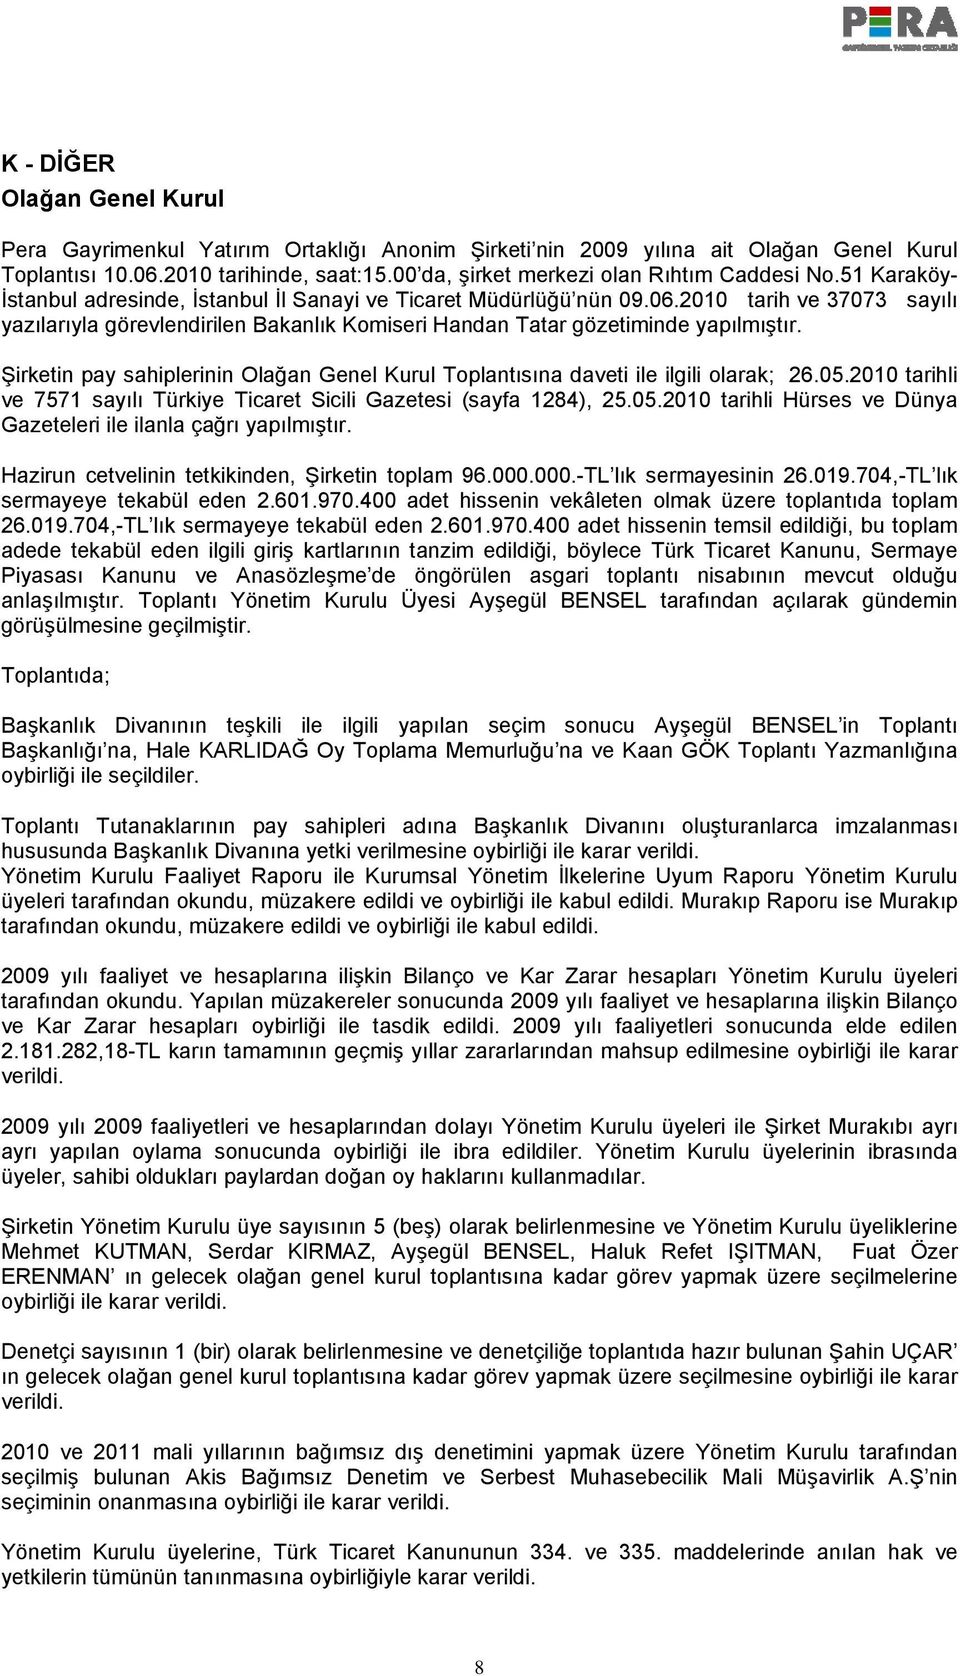 2010 tarih ve 37073 sayılı yazılarıyla görevlendirilen Bakanlık Komiseri Handan Tatar gözetiminde yapılmıştır. Şirketin pay sahiplerinin Olağan Genel Kurul Toplantısına daveti ile ilgili olarak; 26.